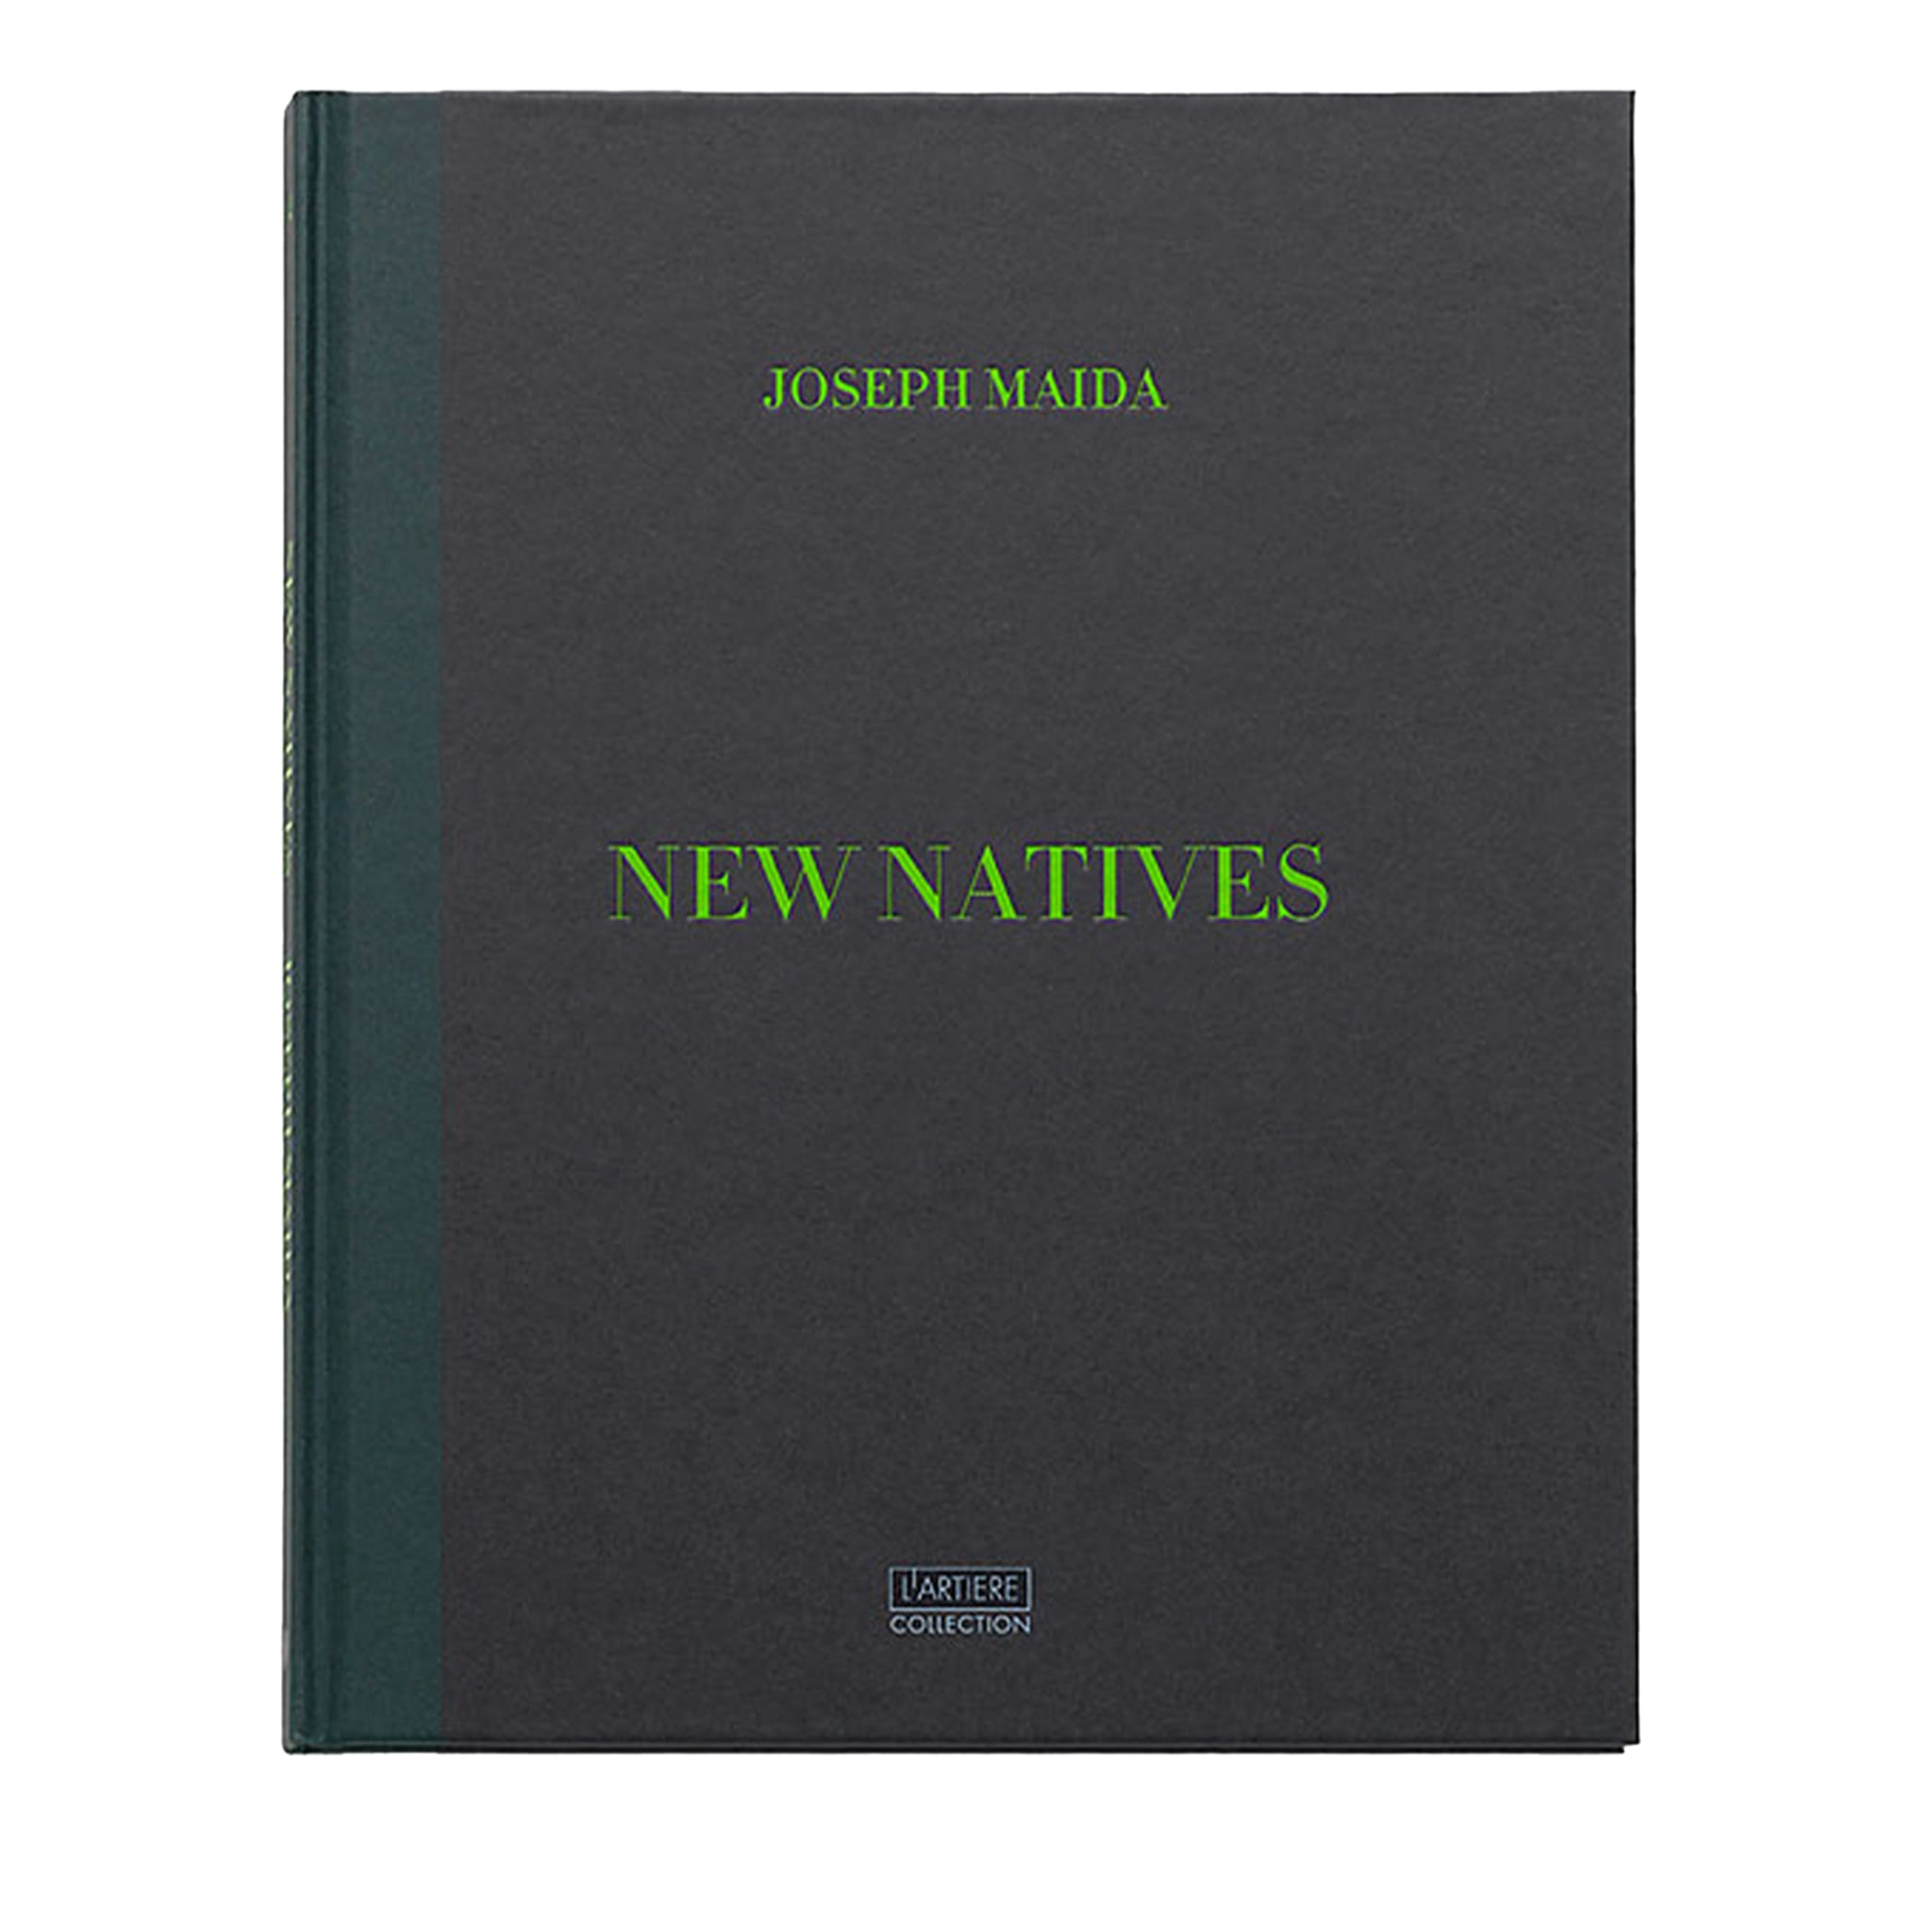 New Natives - Special Edition Box Set - Joseph Maida - Edition limitée à 25 exemplaires - Vue principale